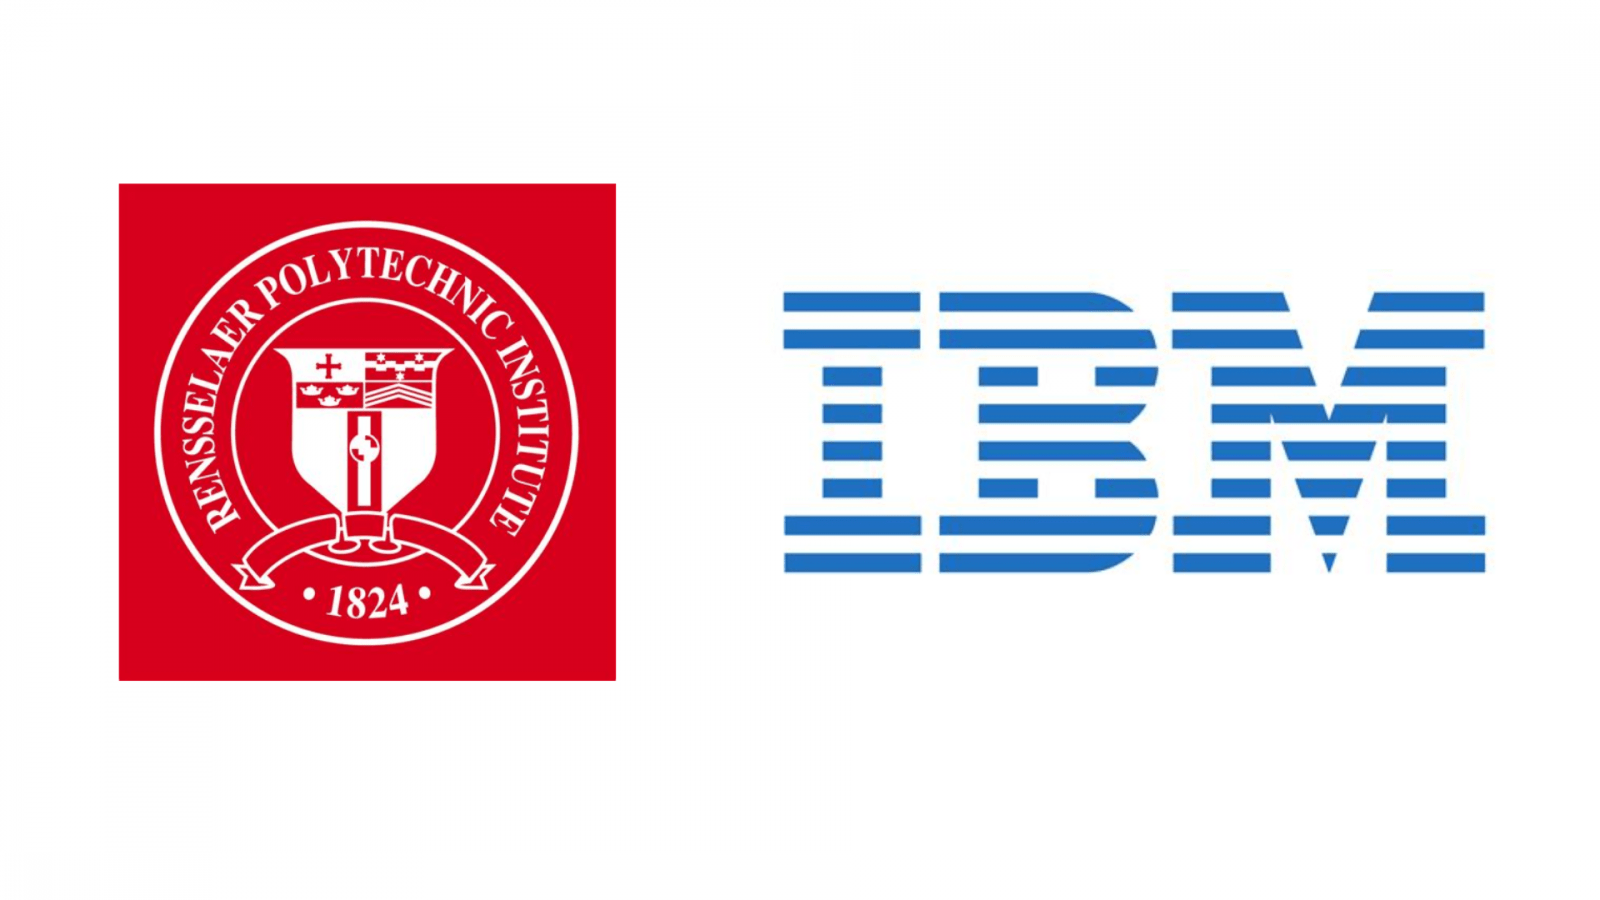 Viện Bách khoa Rensselaer (RPI) và IBM công bố Hệ thống Lượng tử IBM Một đầu tiên trên thế giới trong khuôn viên trường đại học - Inside Quantum Technology